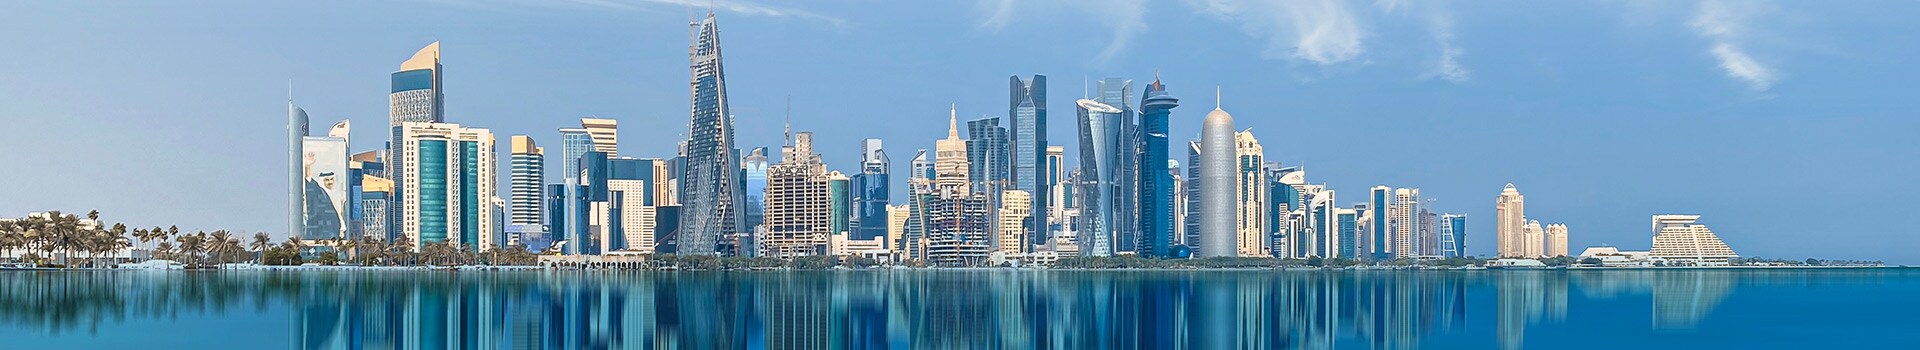 Lontoo - Doha